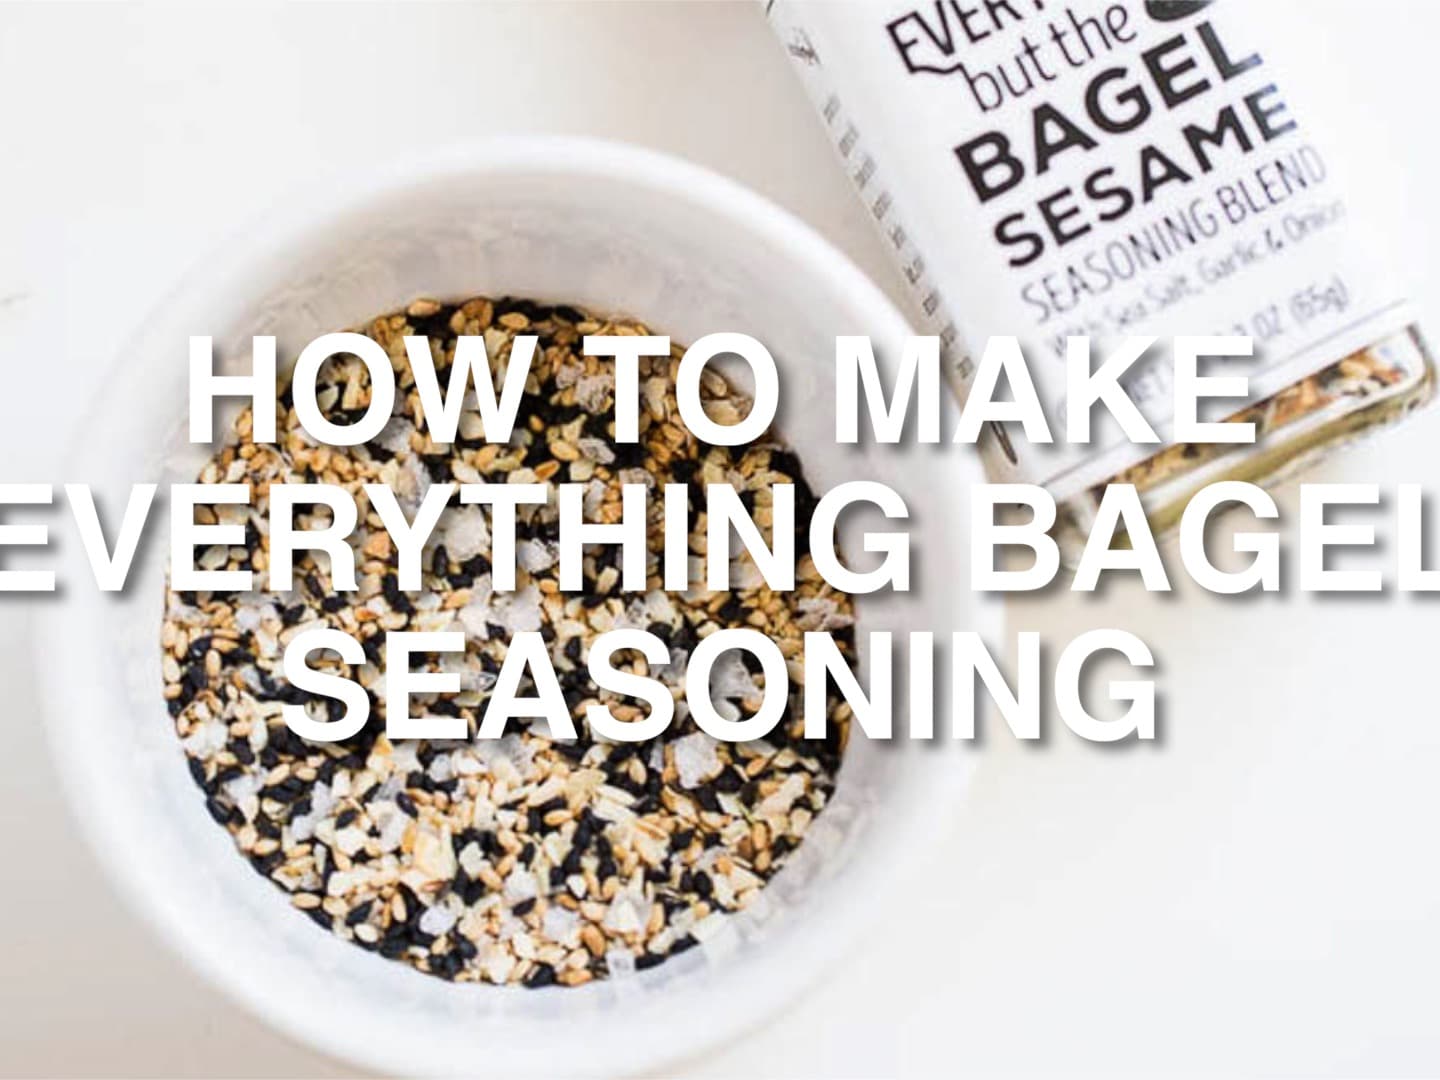  Everything Bagel Salt Free Seasoning : Grocery & Gourmet Food